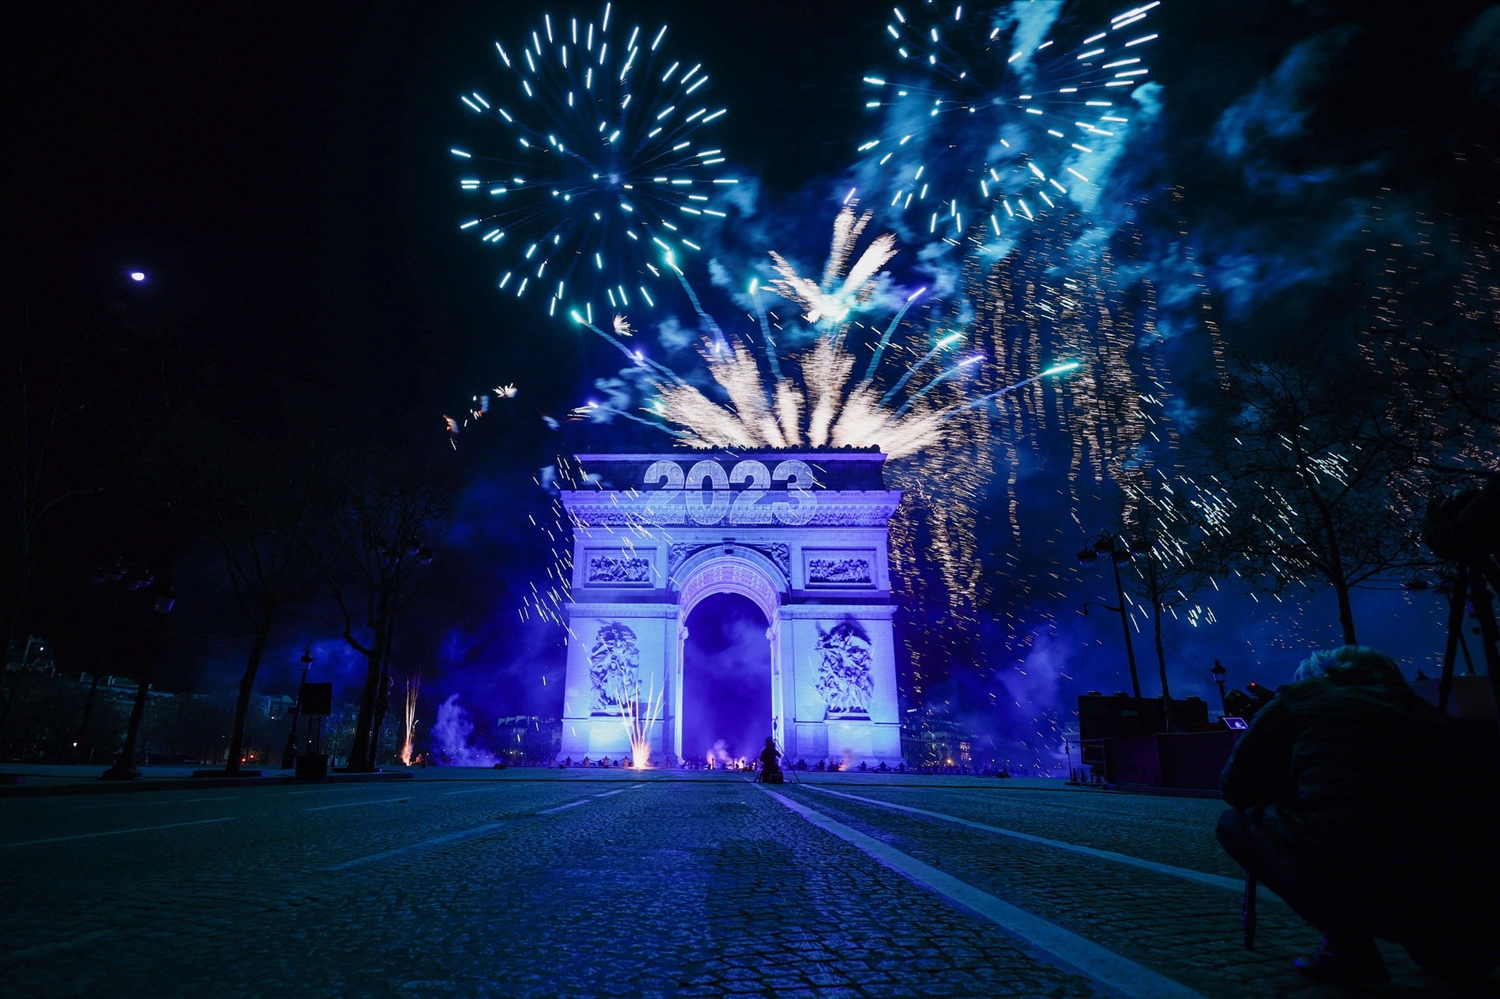 Pháo hoa thắp sáng bầu trời Paris trước Khải Hoàn Môn trong lễ đón năm mới trên đại lộ Champs Elysees ở Paris, Pháp. (Ảnh: Reuters)